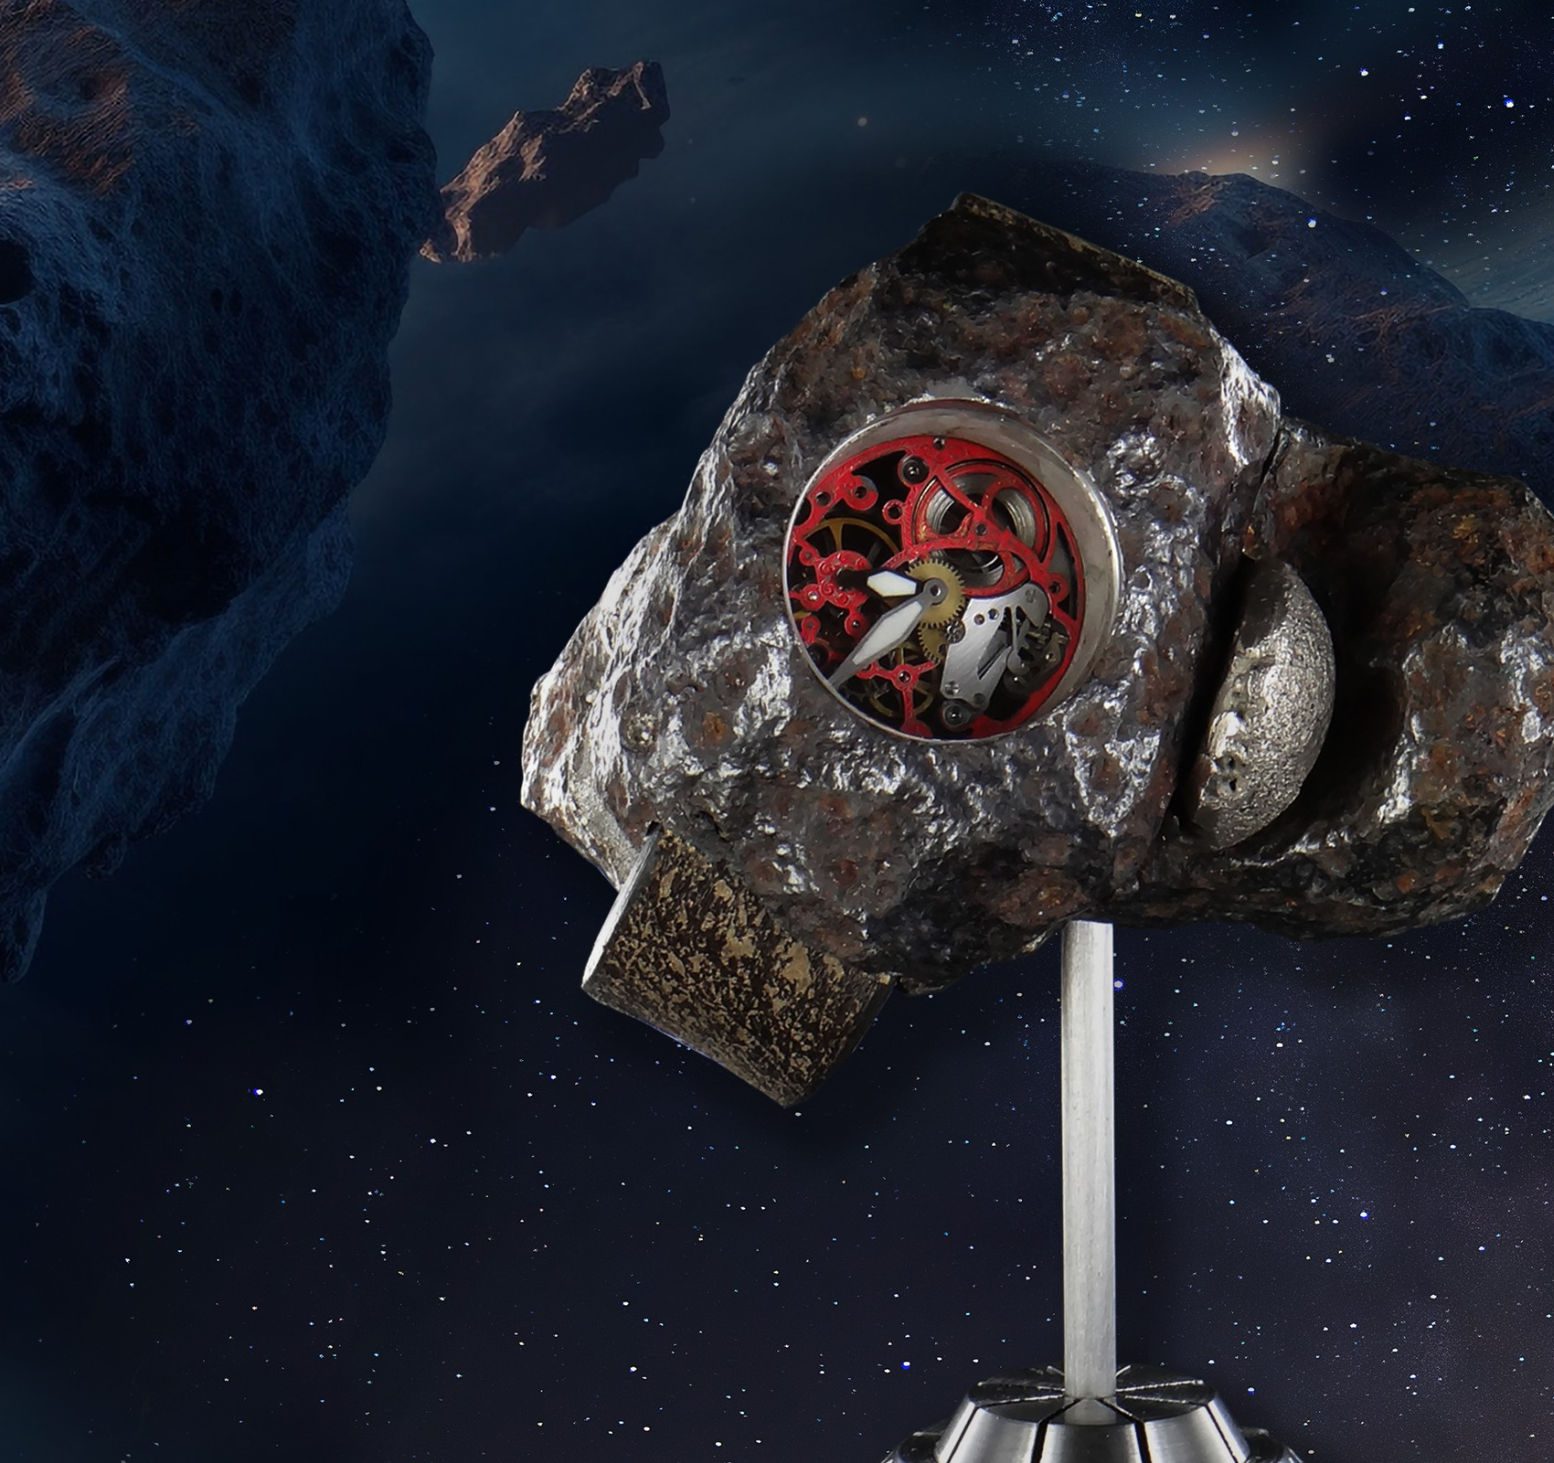 Ρολόι Asteroid: Ο λόγος που κοστίζει εκατομμύρια ευρώ – Από τι είναι φτιαγμένο